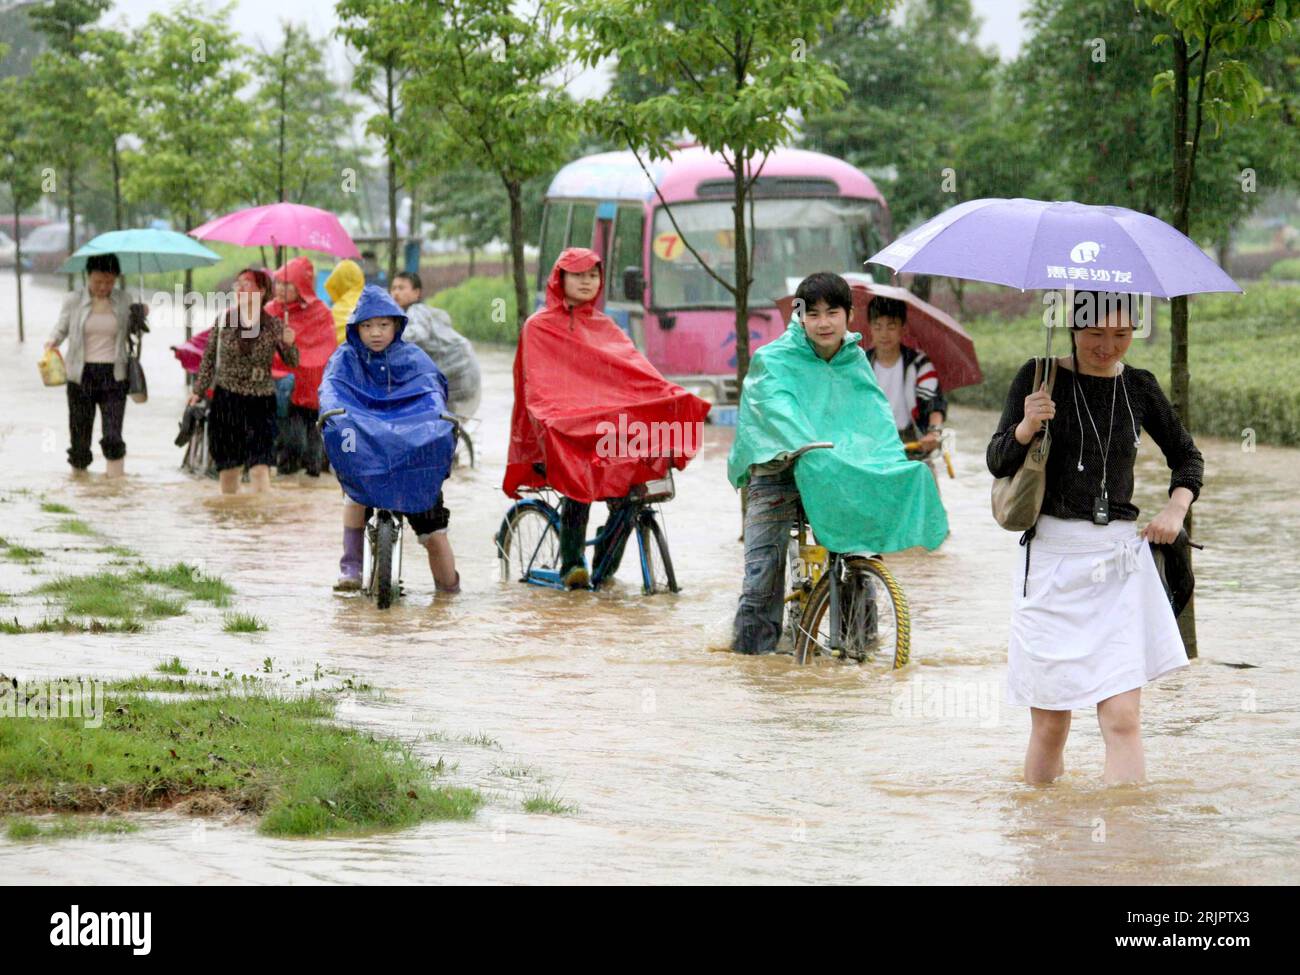 Bildnummer: 51234731 Datum: 09.05.2006 Copyright: imago/Xinhua Radfahrer und Fußgänger kämpfen sich durch die Überflutungen nach schweren Regenfällen in Huangshan - PUBLICATIONxNOTxINxCHN, Personen , Optimistisch; 2006, Huangshan, Regen, schwere, Überflutung, Überschwemmung, Überschwemmungen, überflutet, überflutete, überschwemmt, Rad fahren, Fahrrad, fährt, fahrend,; , quer, Kbdig, Gruppenbild, Cina, , Wetter / Hochwasser, Katastrophe, Katastrophen, Flutkatastrophe, Flutkatastrophen, Anhui Foto Stock